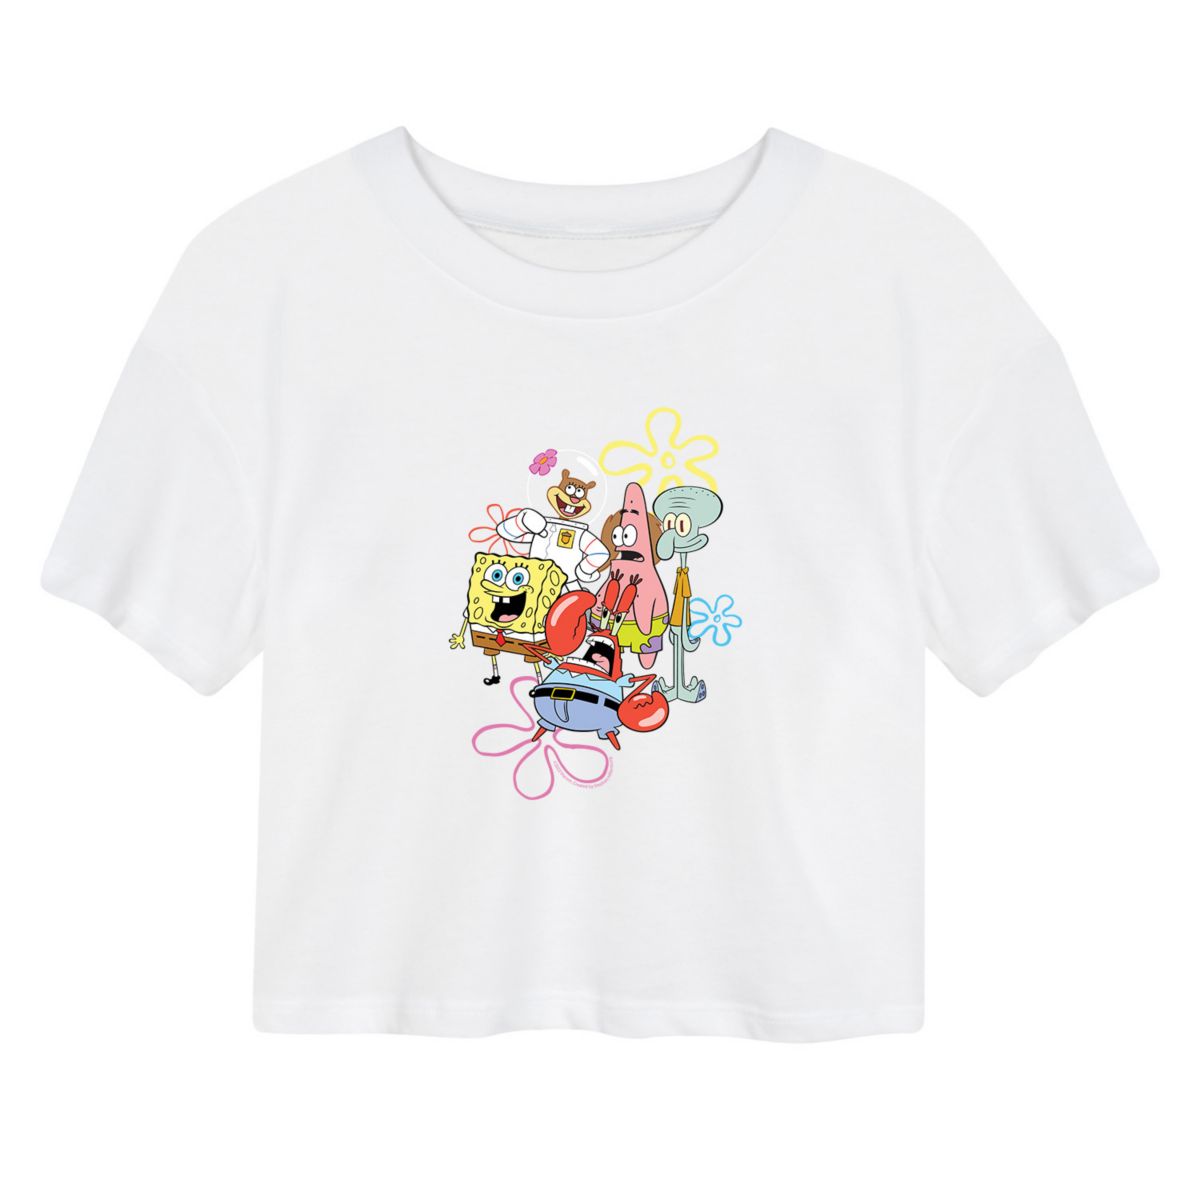 Укороченная футболка с рисунком SpongeBob SquarePants Group для юниоров Nickelodeon